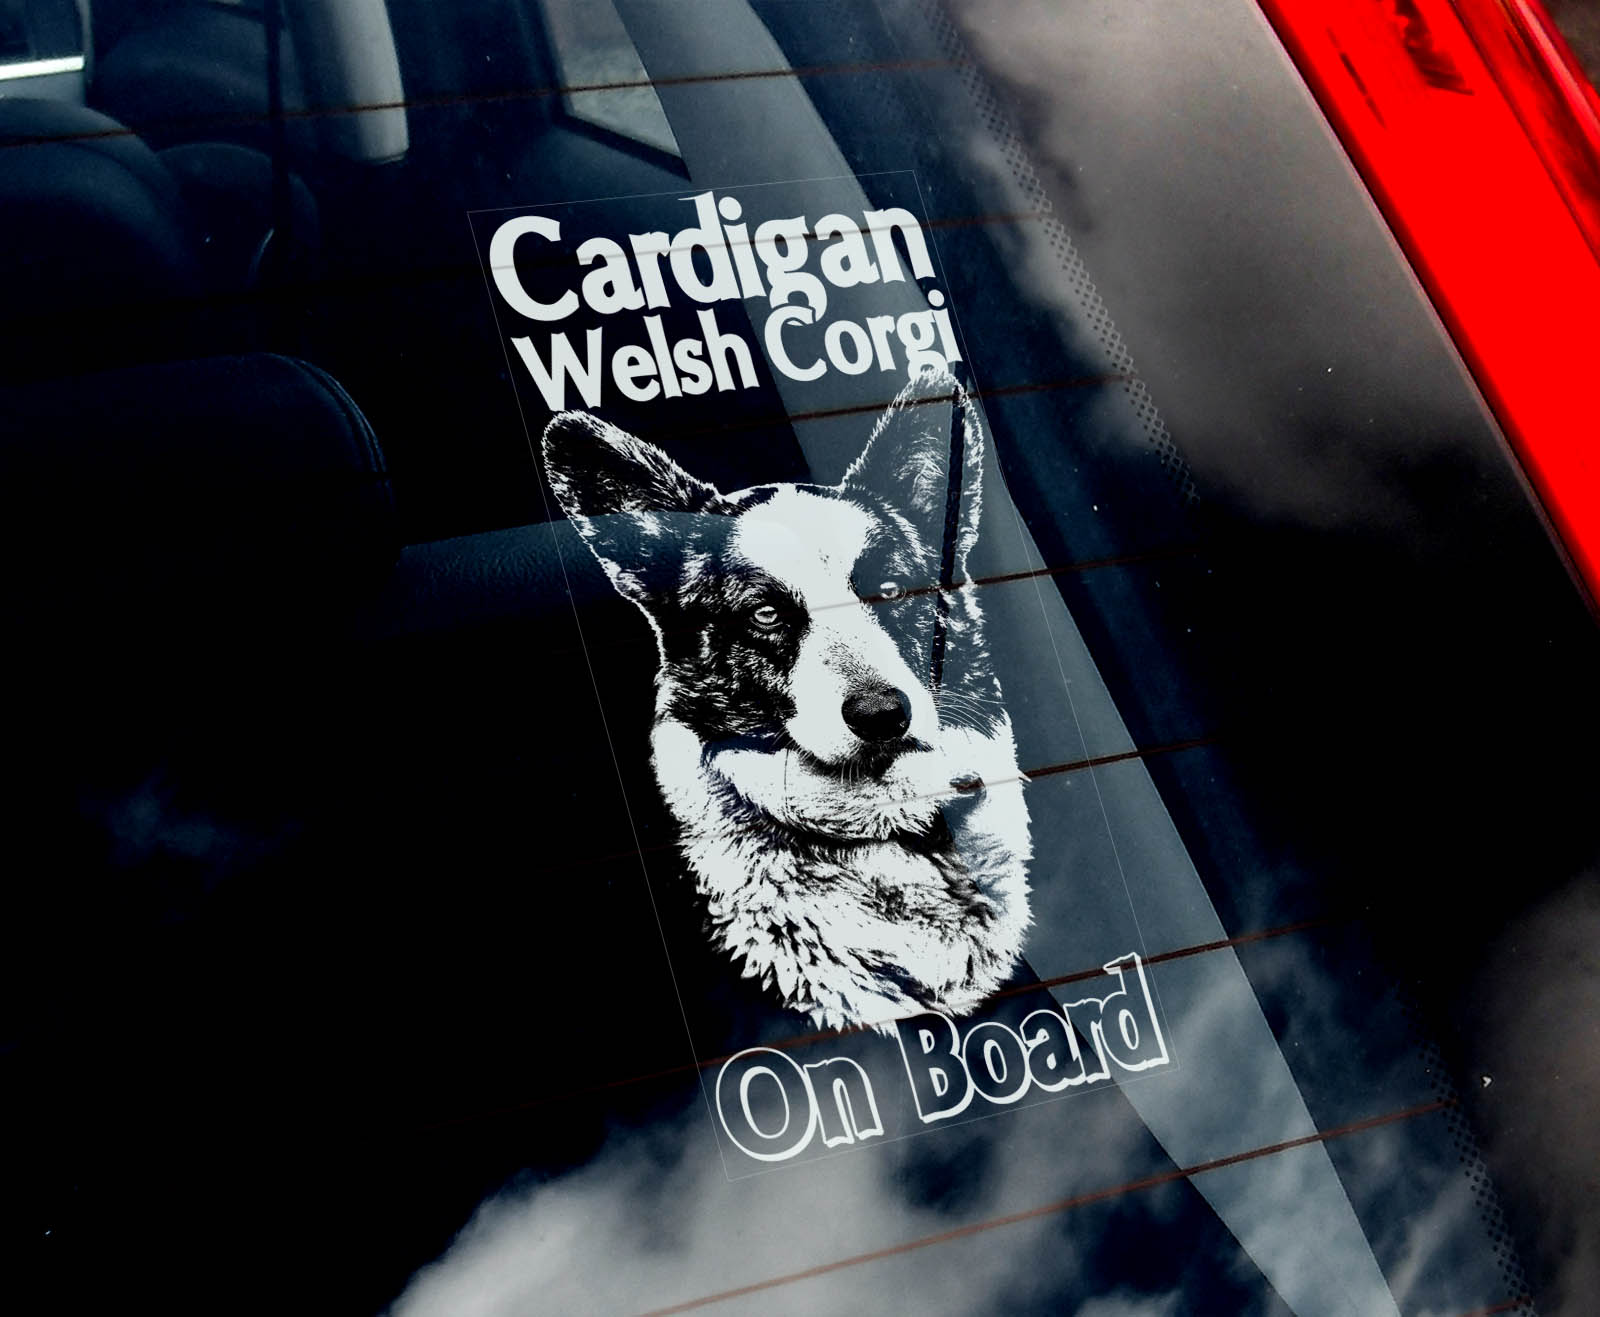 Welshcorgi Cardigan